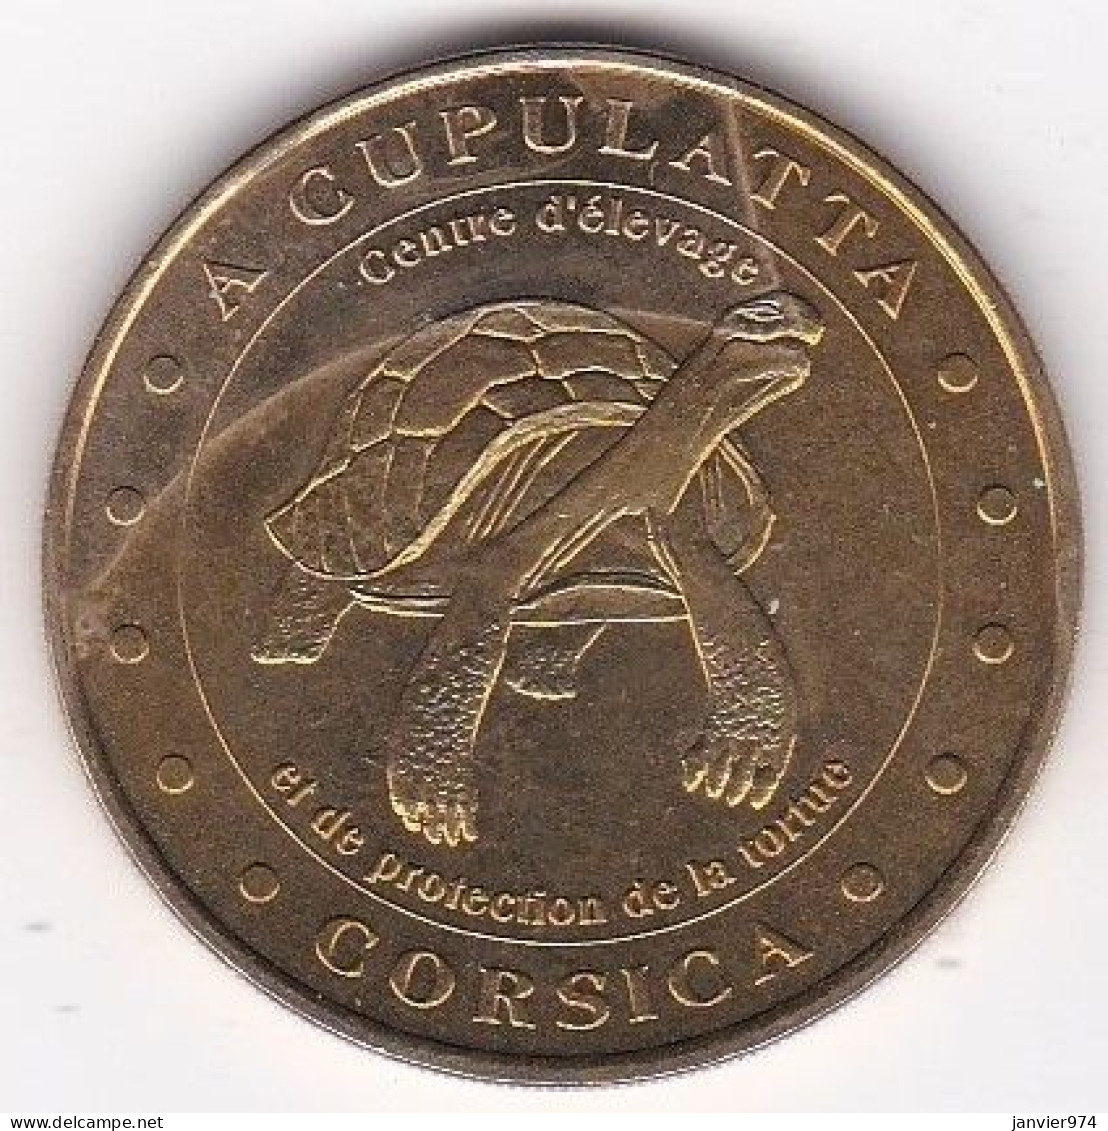 20. Corse. Cupulatta Corsica Tortue 2000 - 2000